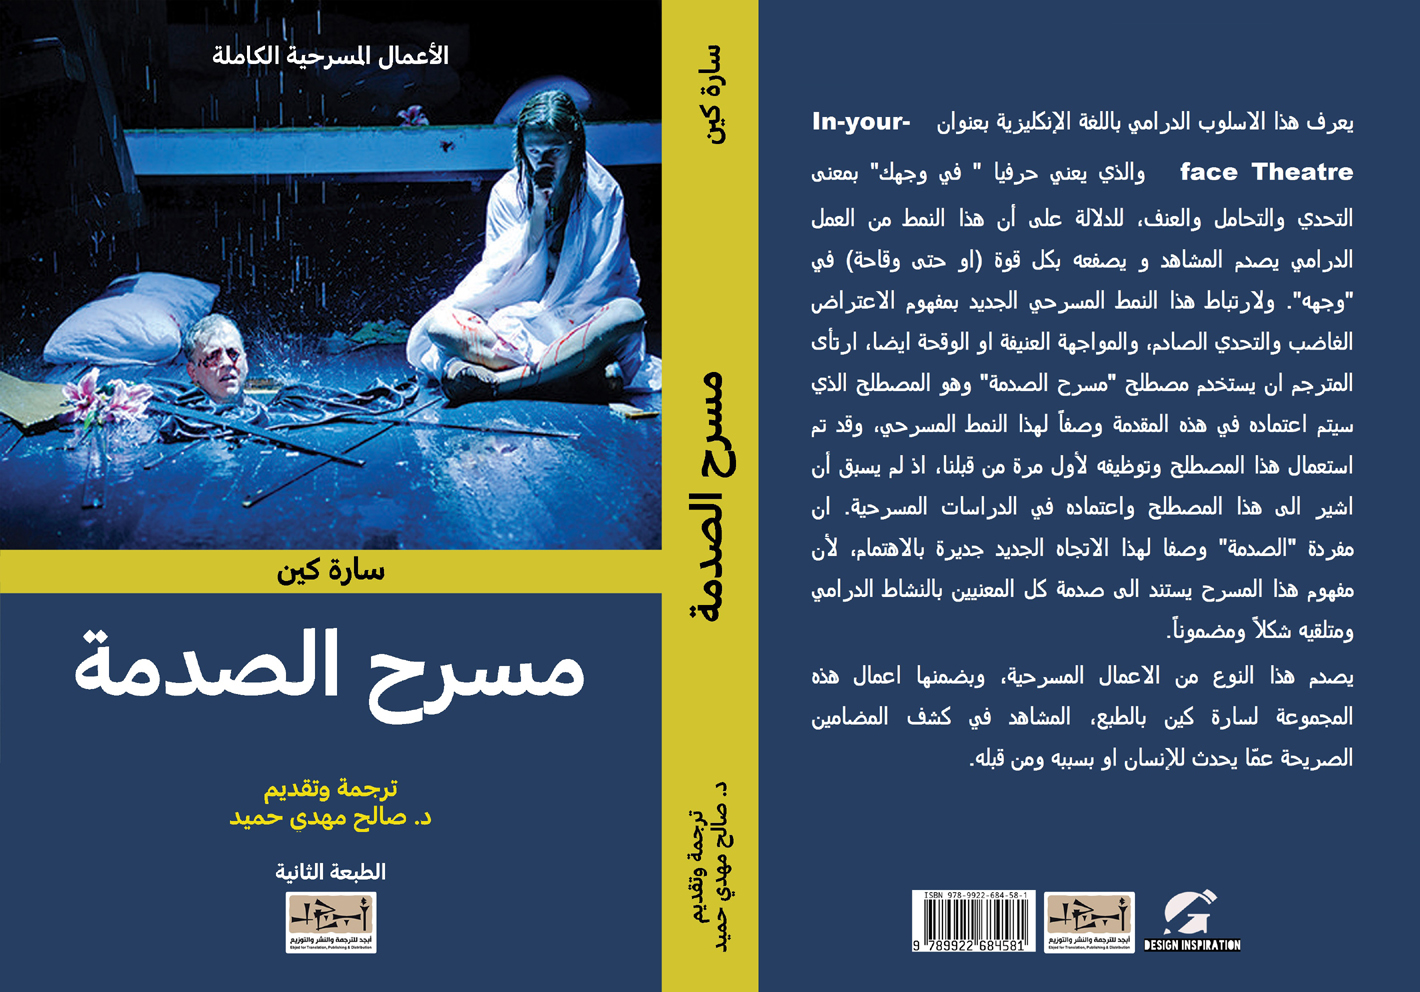 مسرح الصدمة - سارة كين - دراسة ونصوص مسرحية - ترجمة د. صالح مهدي